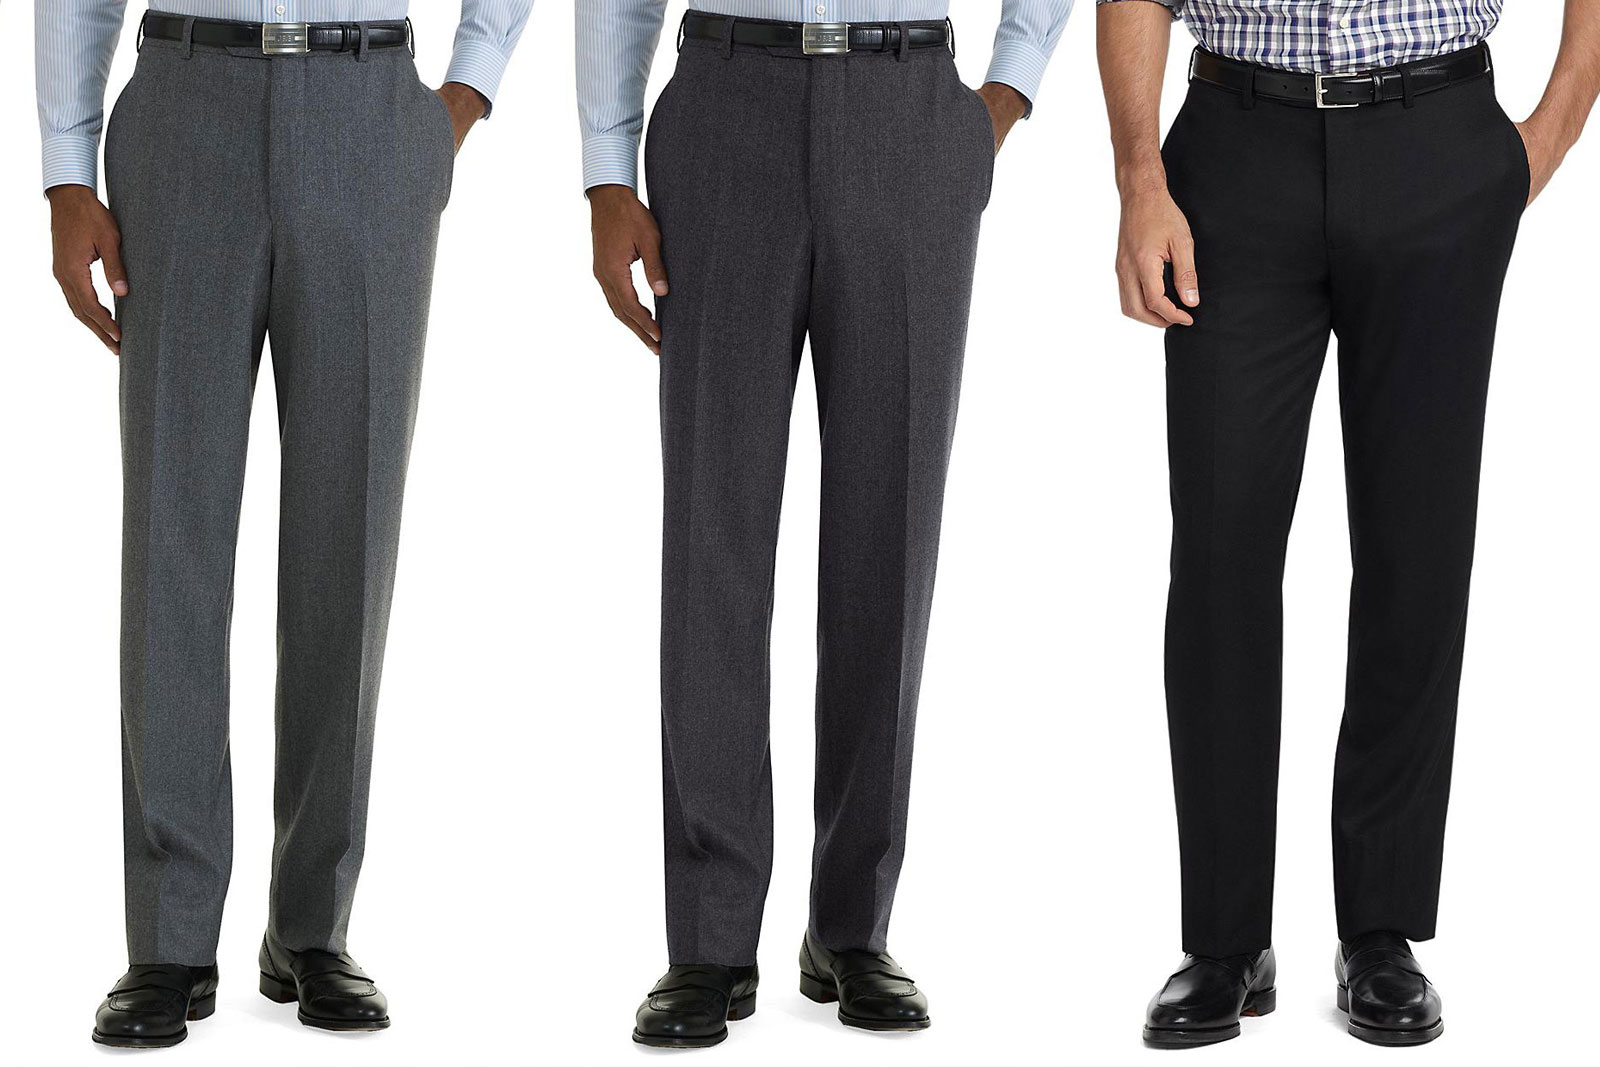 Виды мужских брюк и их названия с фото